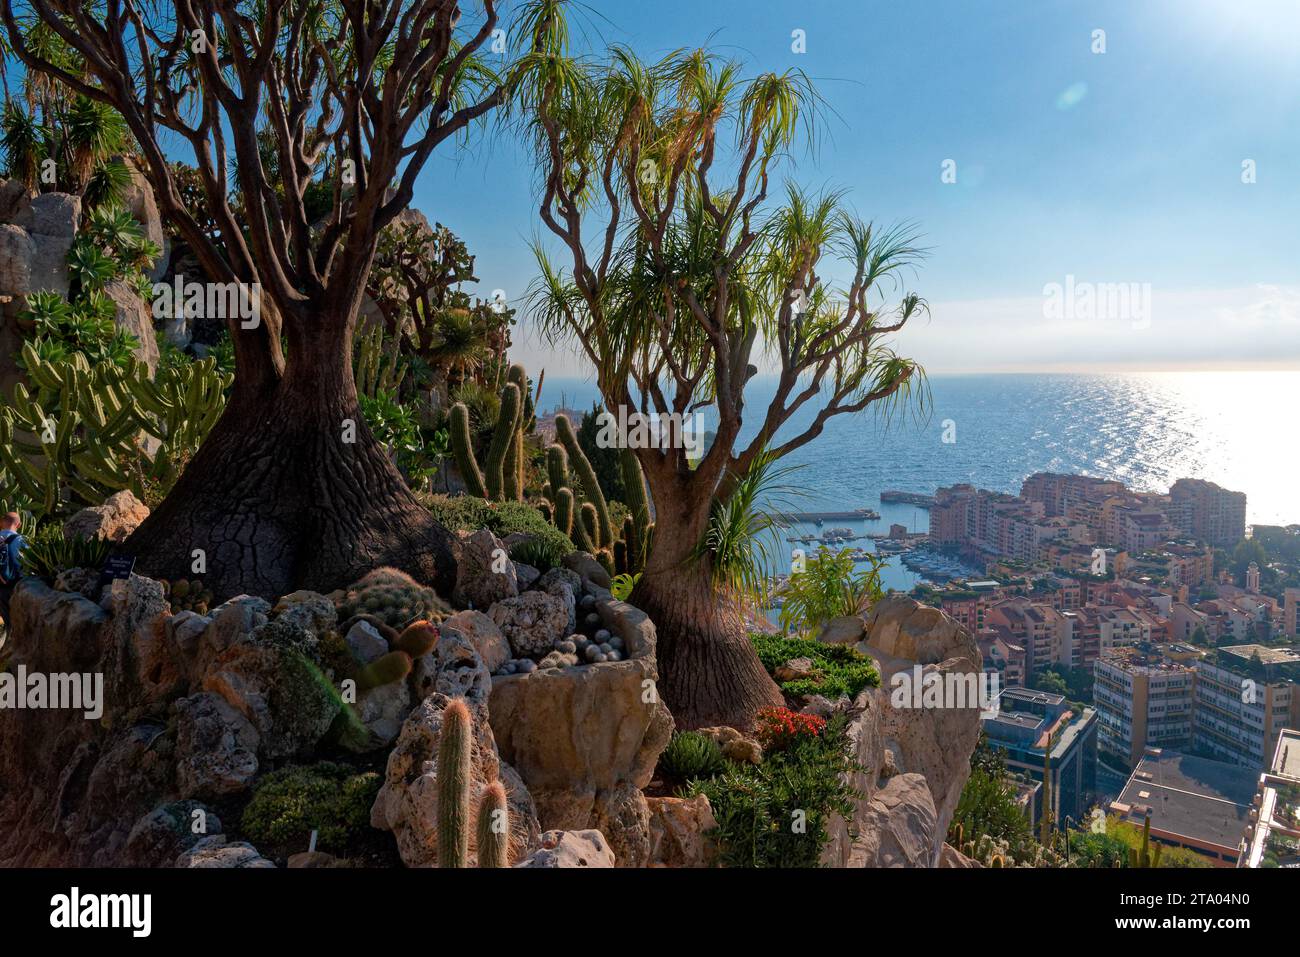 principauté de Monaco, vue sur le port depuis la place du palais, le musée océanographique et le quartier de fontvieille depuis le jardin exotique Stock Photo